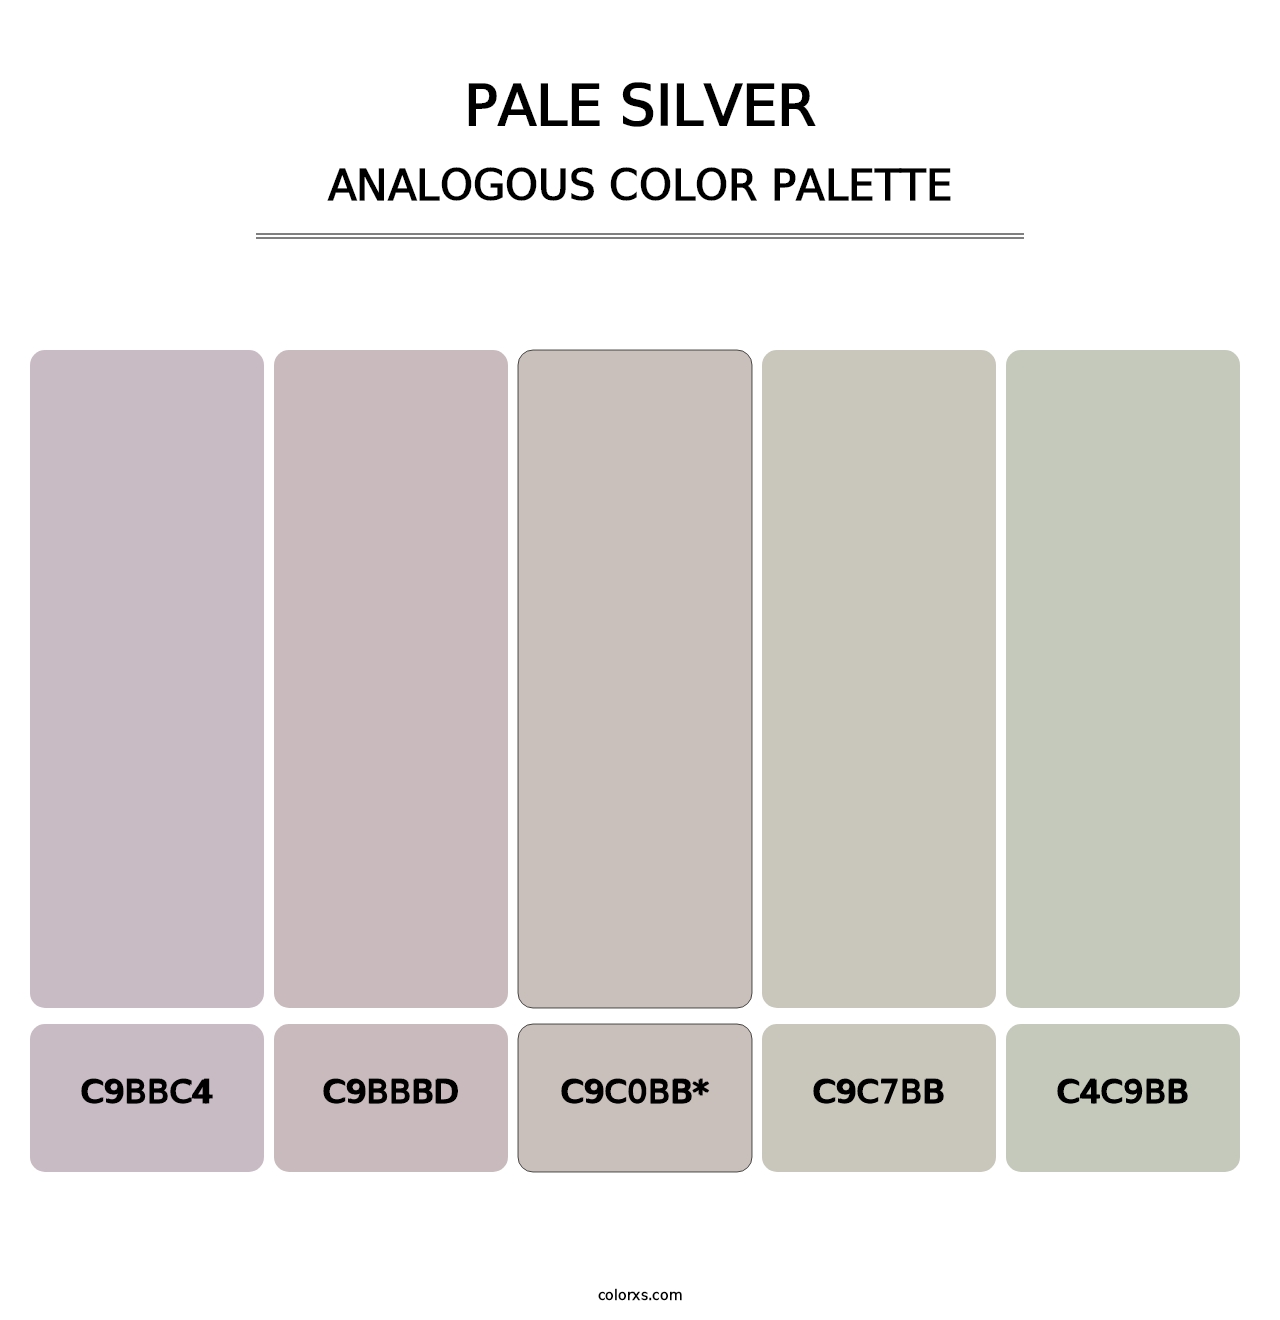 Pale Silver - Analogous Color Palette